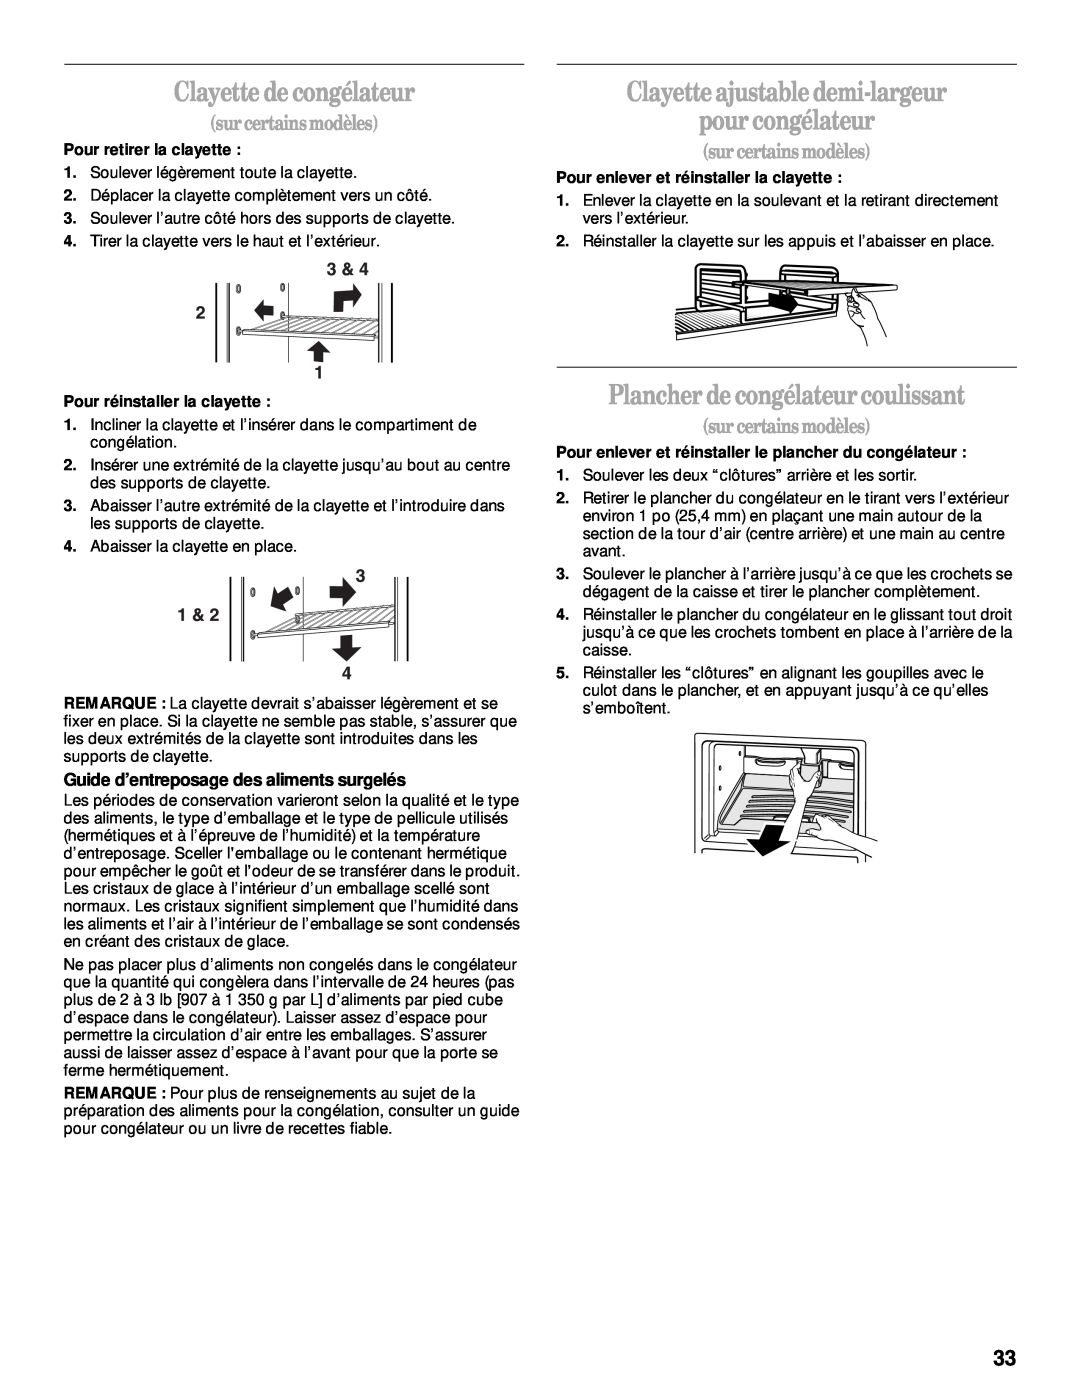 Whirlpool 2205266 manual Clayette de congélateur, Clayette ajustable demi-largeur pour congélateur, surcertains modèles 